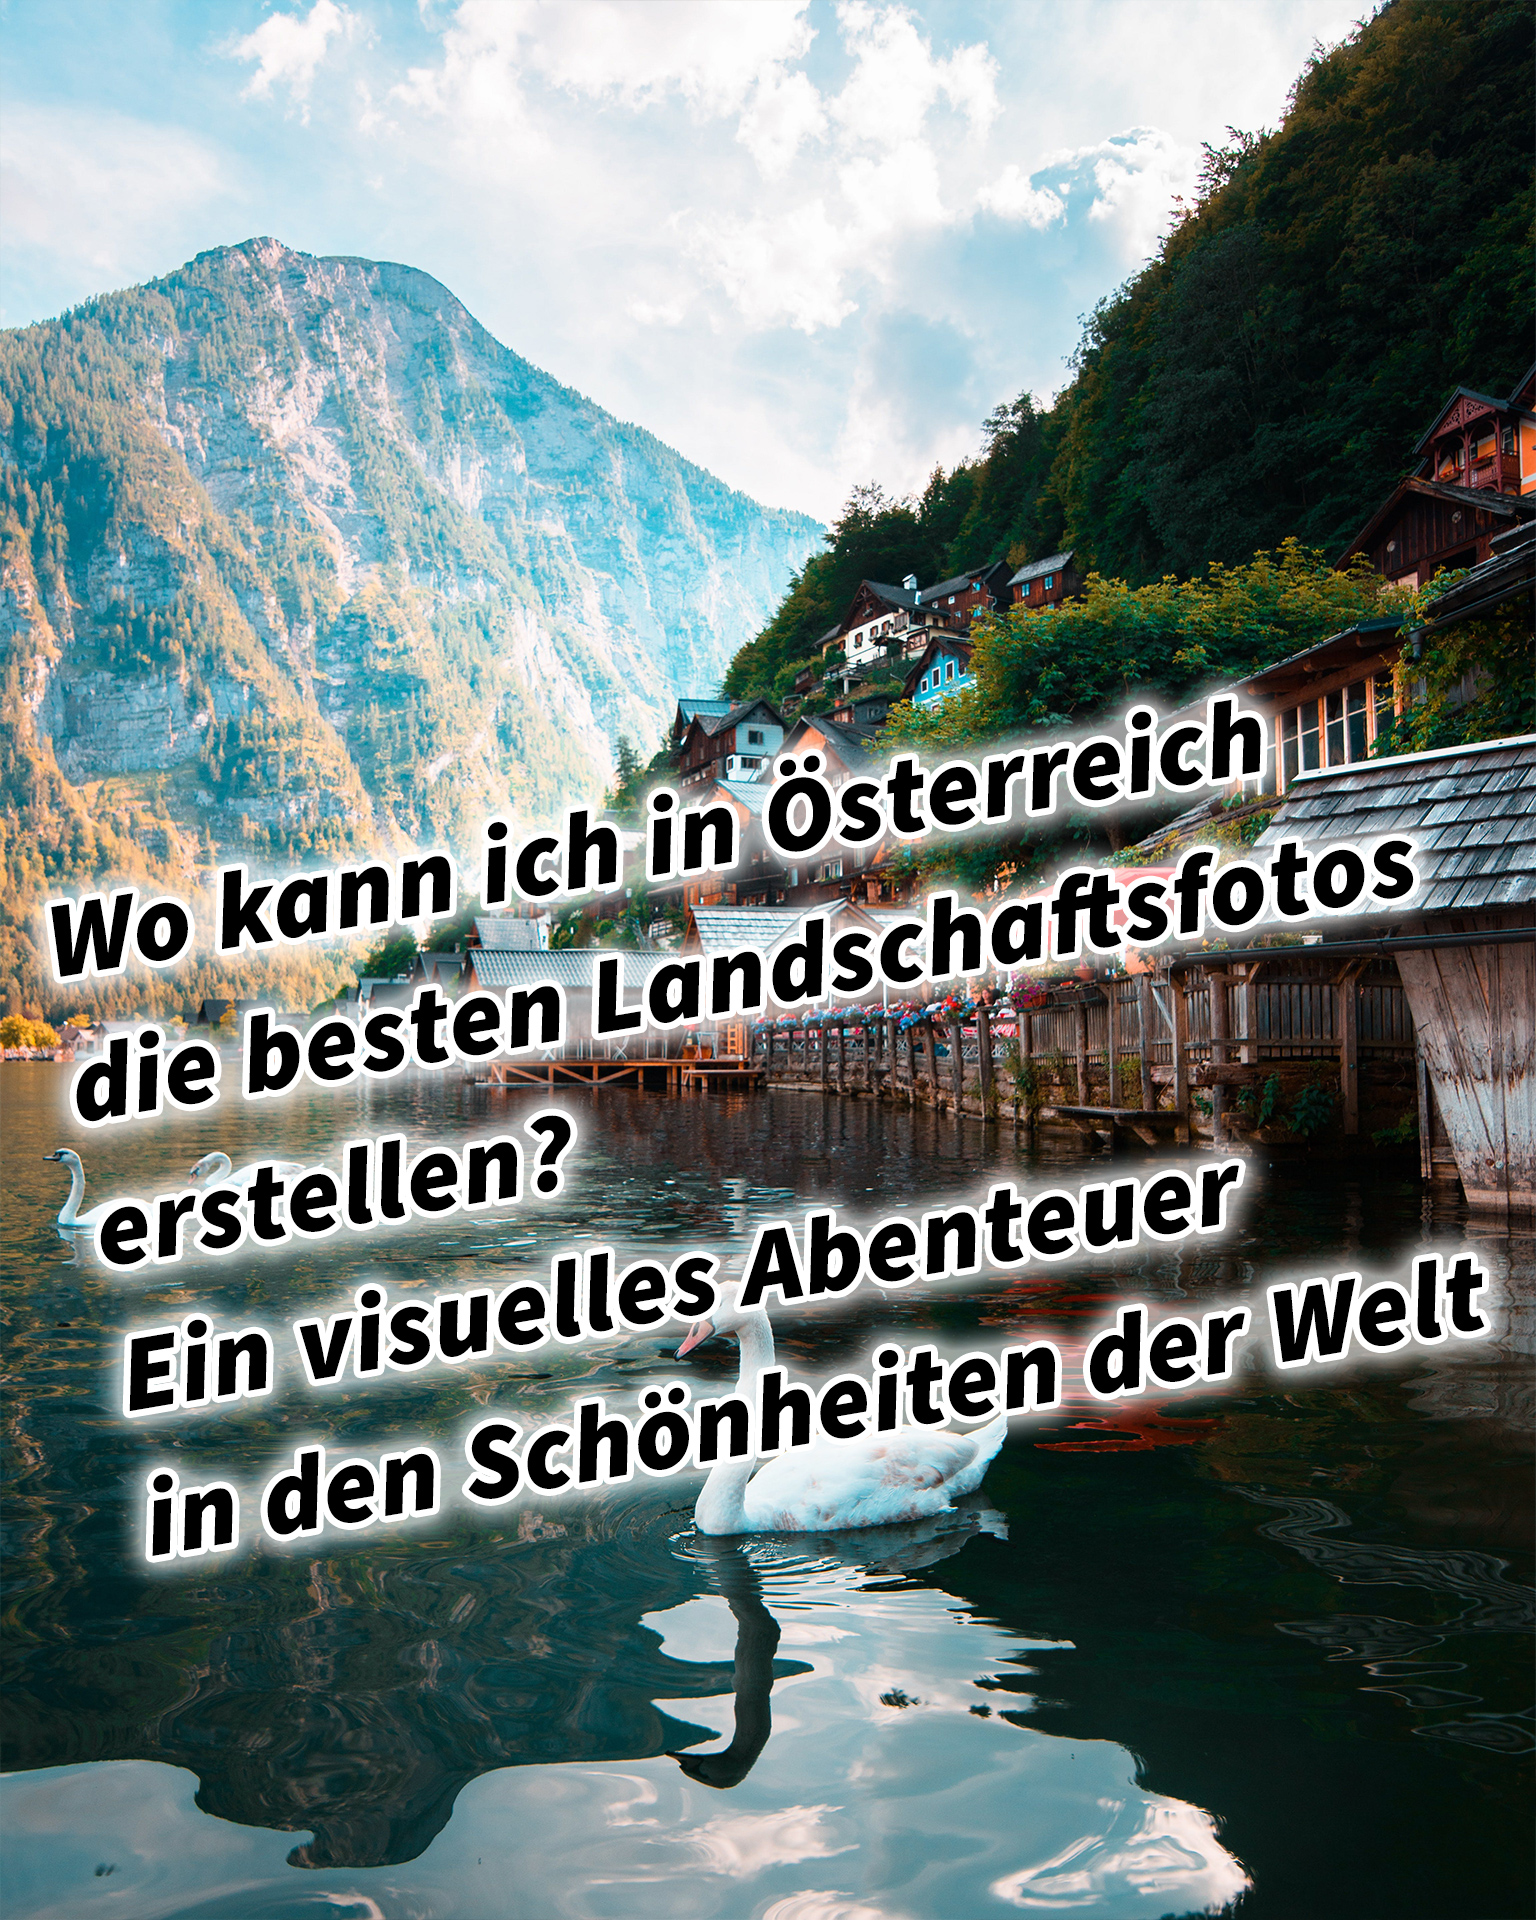 Wo kann ich in Österreich die besten Landschaftsfotos erstellen? Ein visuelles Abenteuer in den Schönheiten der Welt